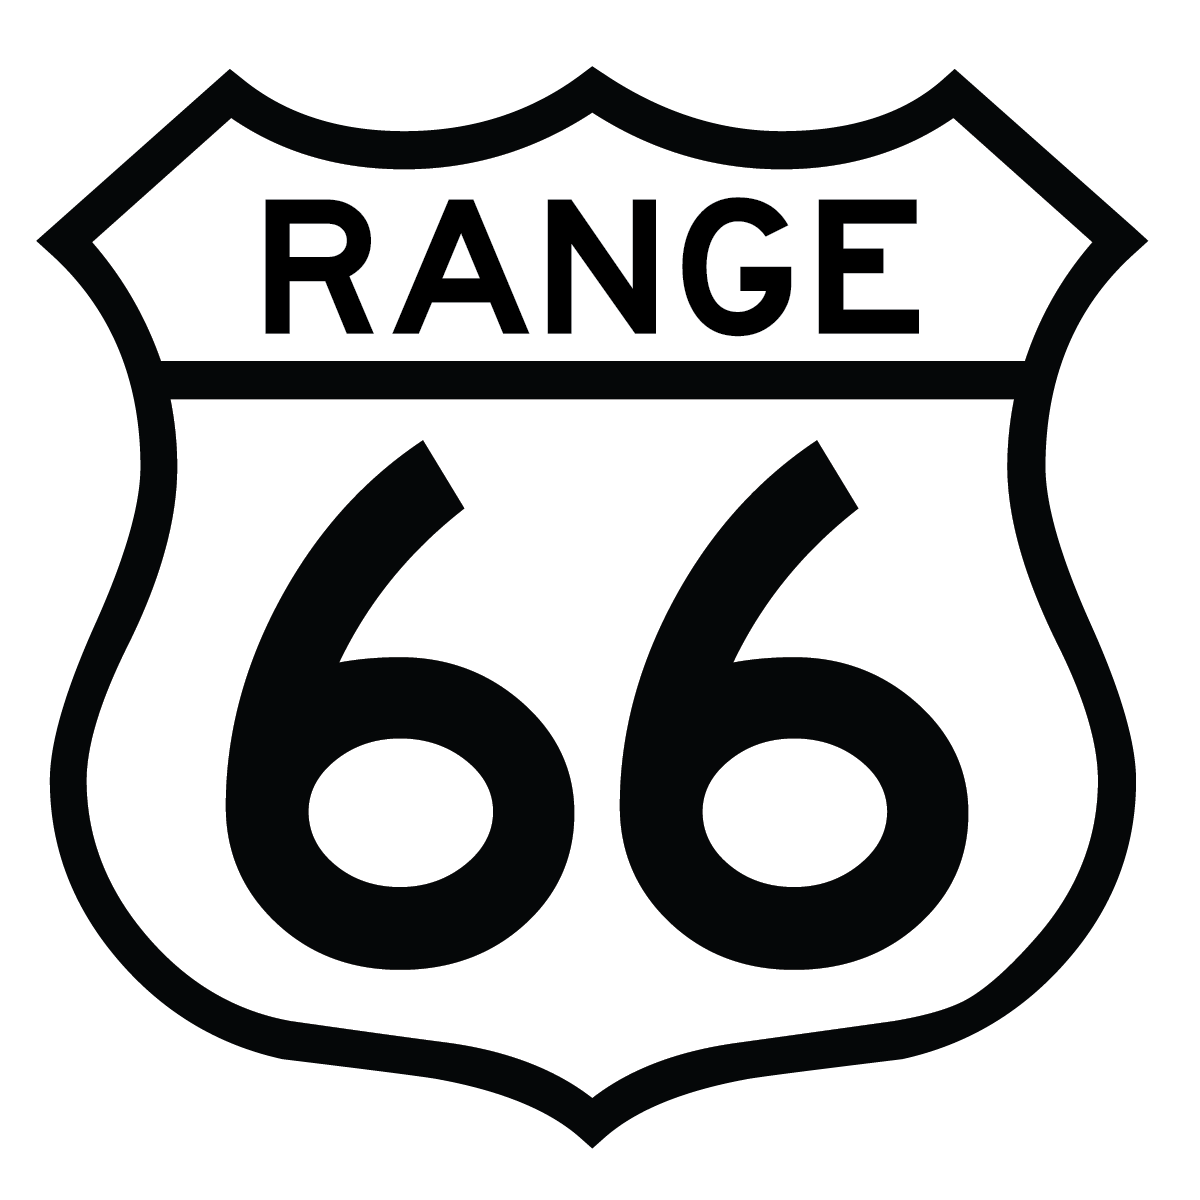 Range 66